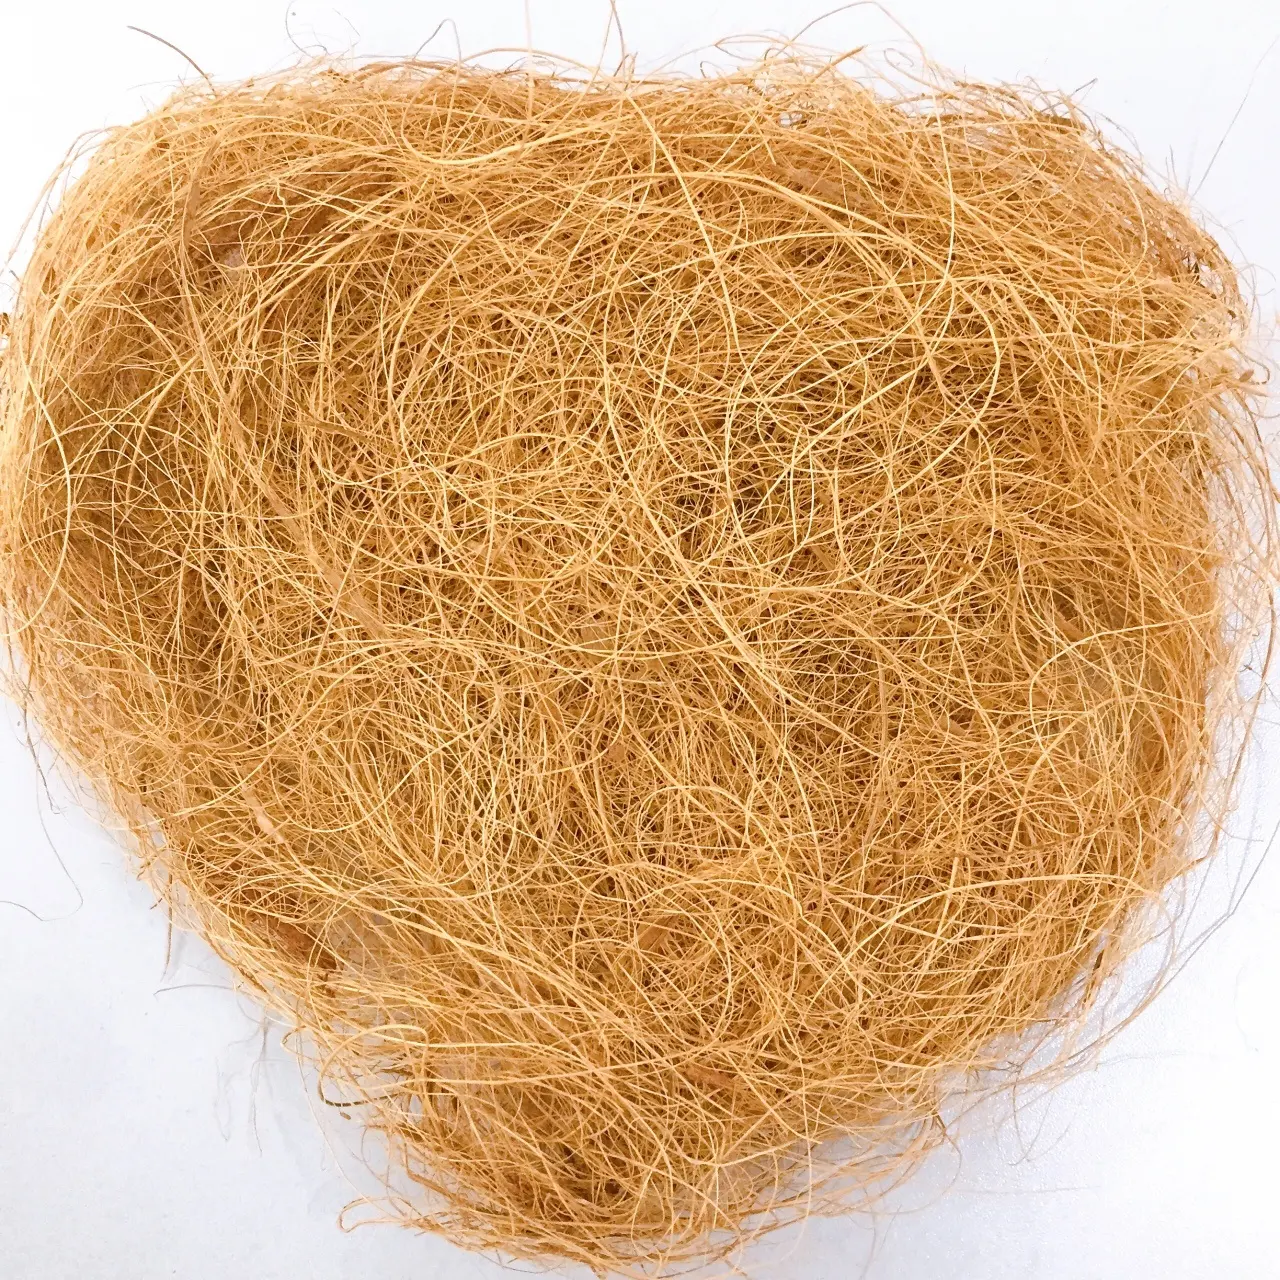 Coconut coir/coconut husk 100% natural fiber from Vietnam - Ms. Mira